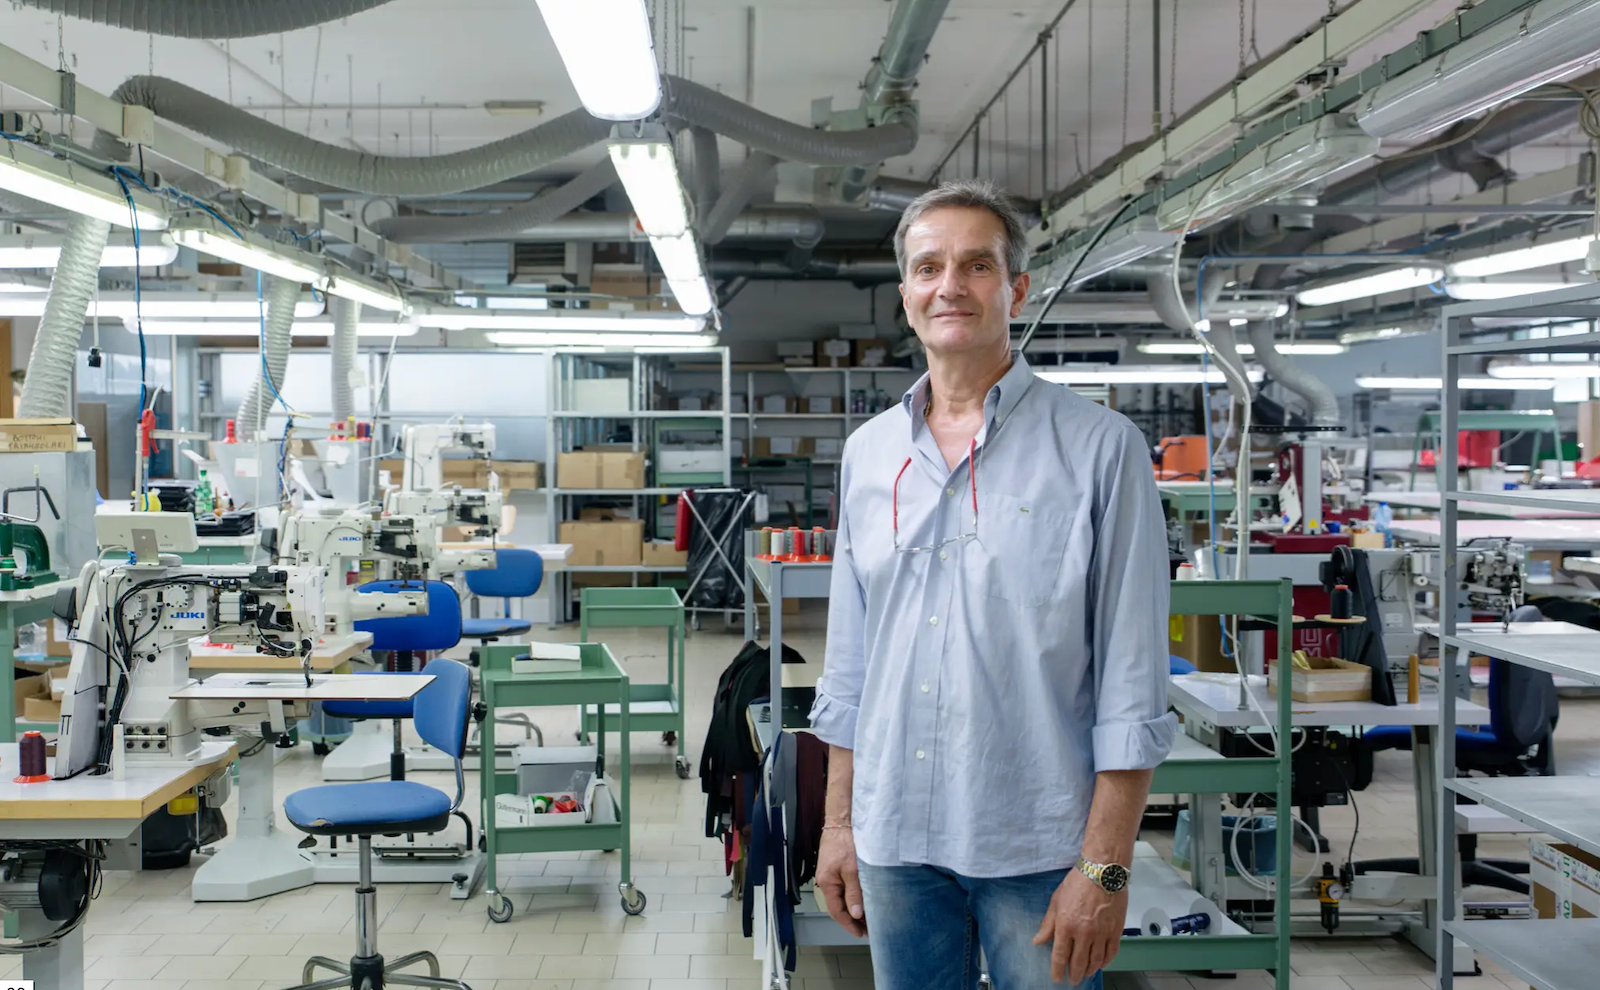 Adriano Dedisti di Laboratorio Toscano, uno degli artigiani con cui collabora MIRTA.